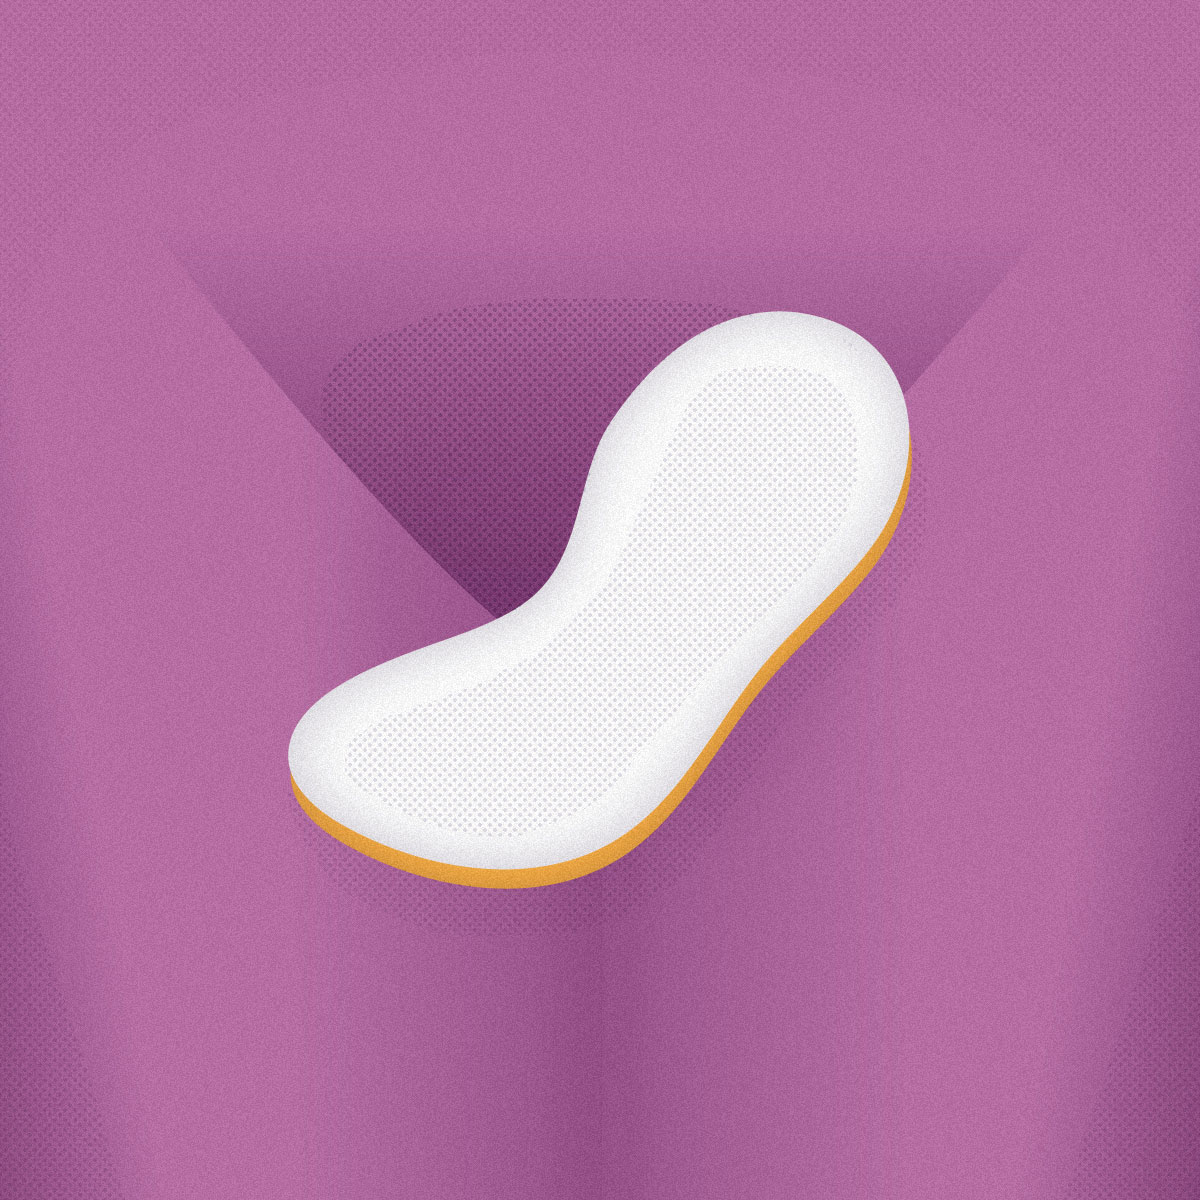 Ilustración de un adherente con un fondo en violeta abstracto que puede entenderse como una vagina